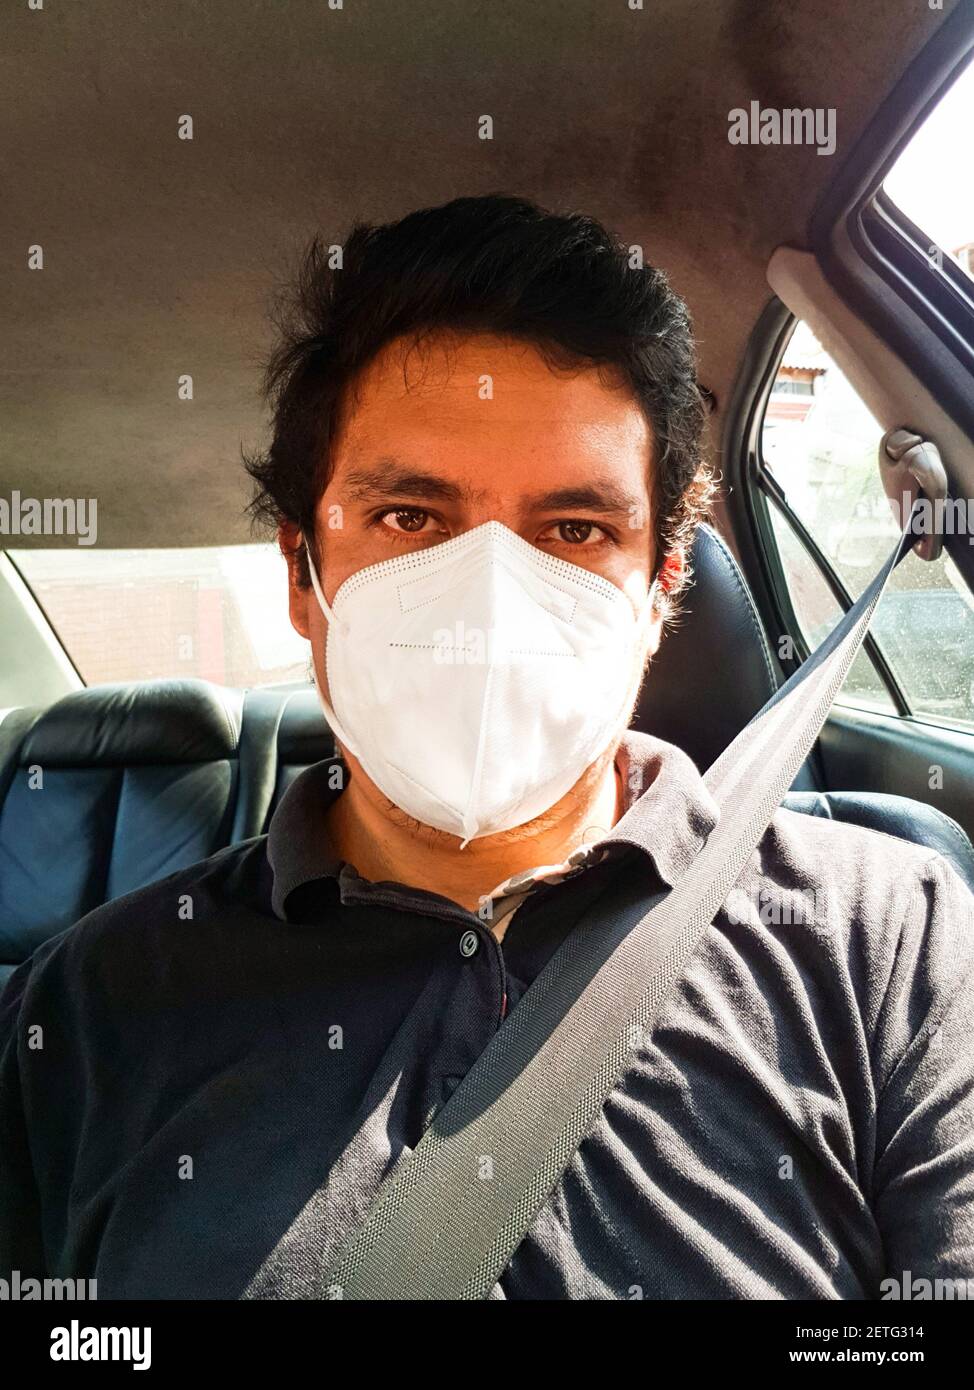 Ein Mann, der ein Auto fährt, legt während einer Epidemie eine medizinische Maske an, ein Taxifahrer in eine Maske, Schutz vor dem Virus. Fahrer im schwarzen Auto Stockfoto